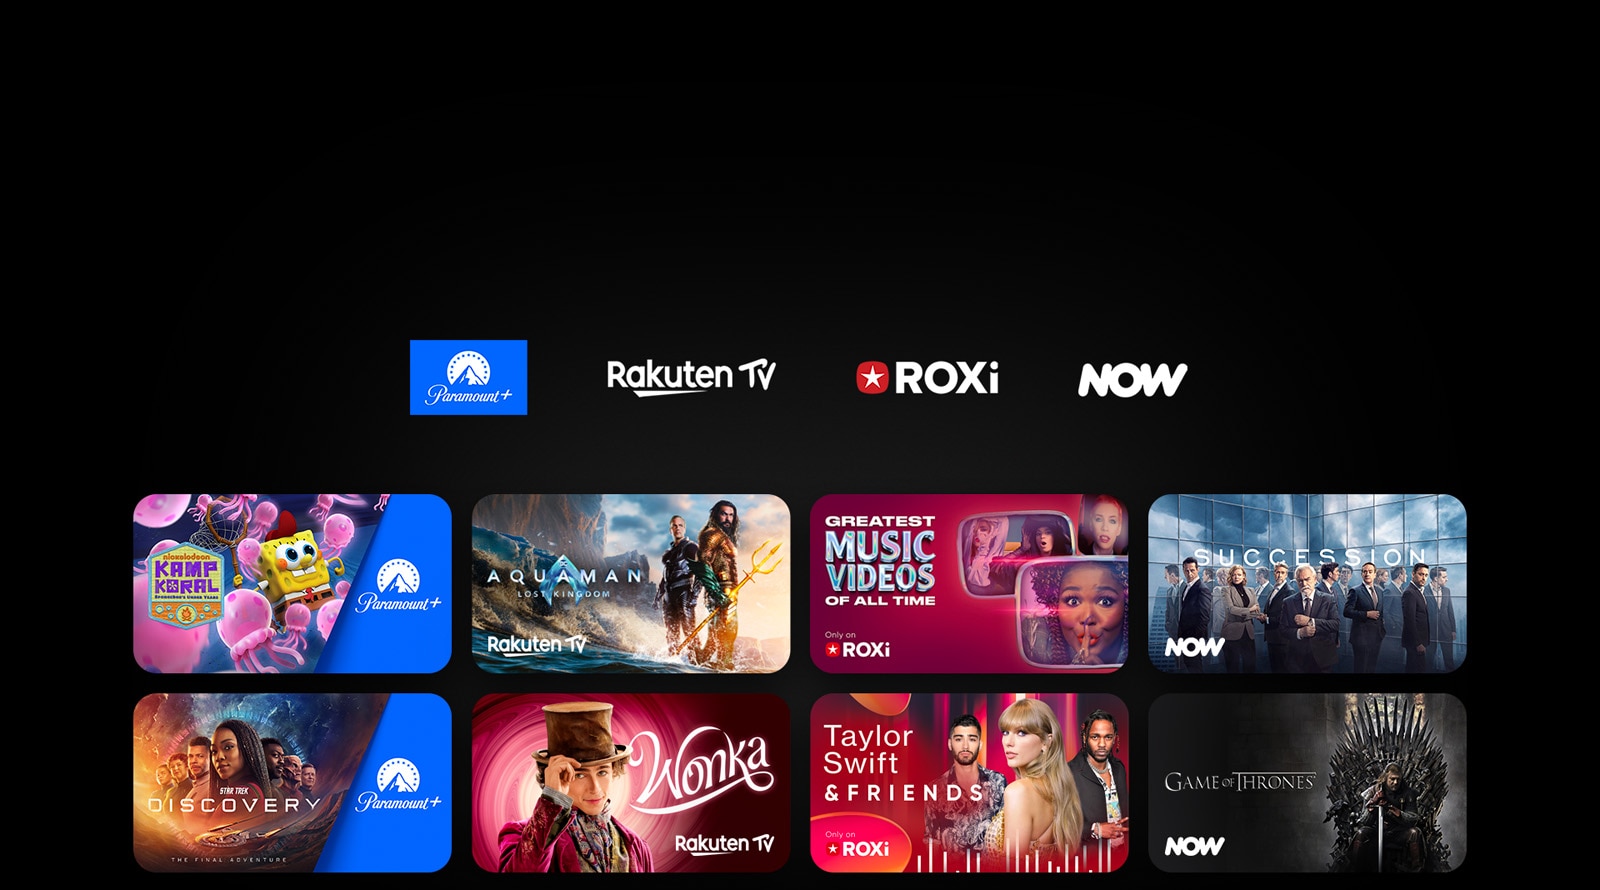 تظهر شعارات Paramount+ وRakuten TV وROXi وNow على التوالي. يوجد أسفلها ملصقات لمسلسلات وأفلام تلفزيونية حصرية.